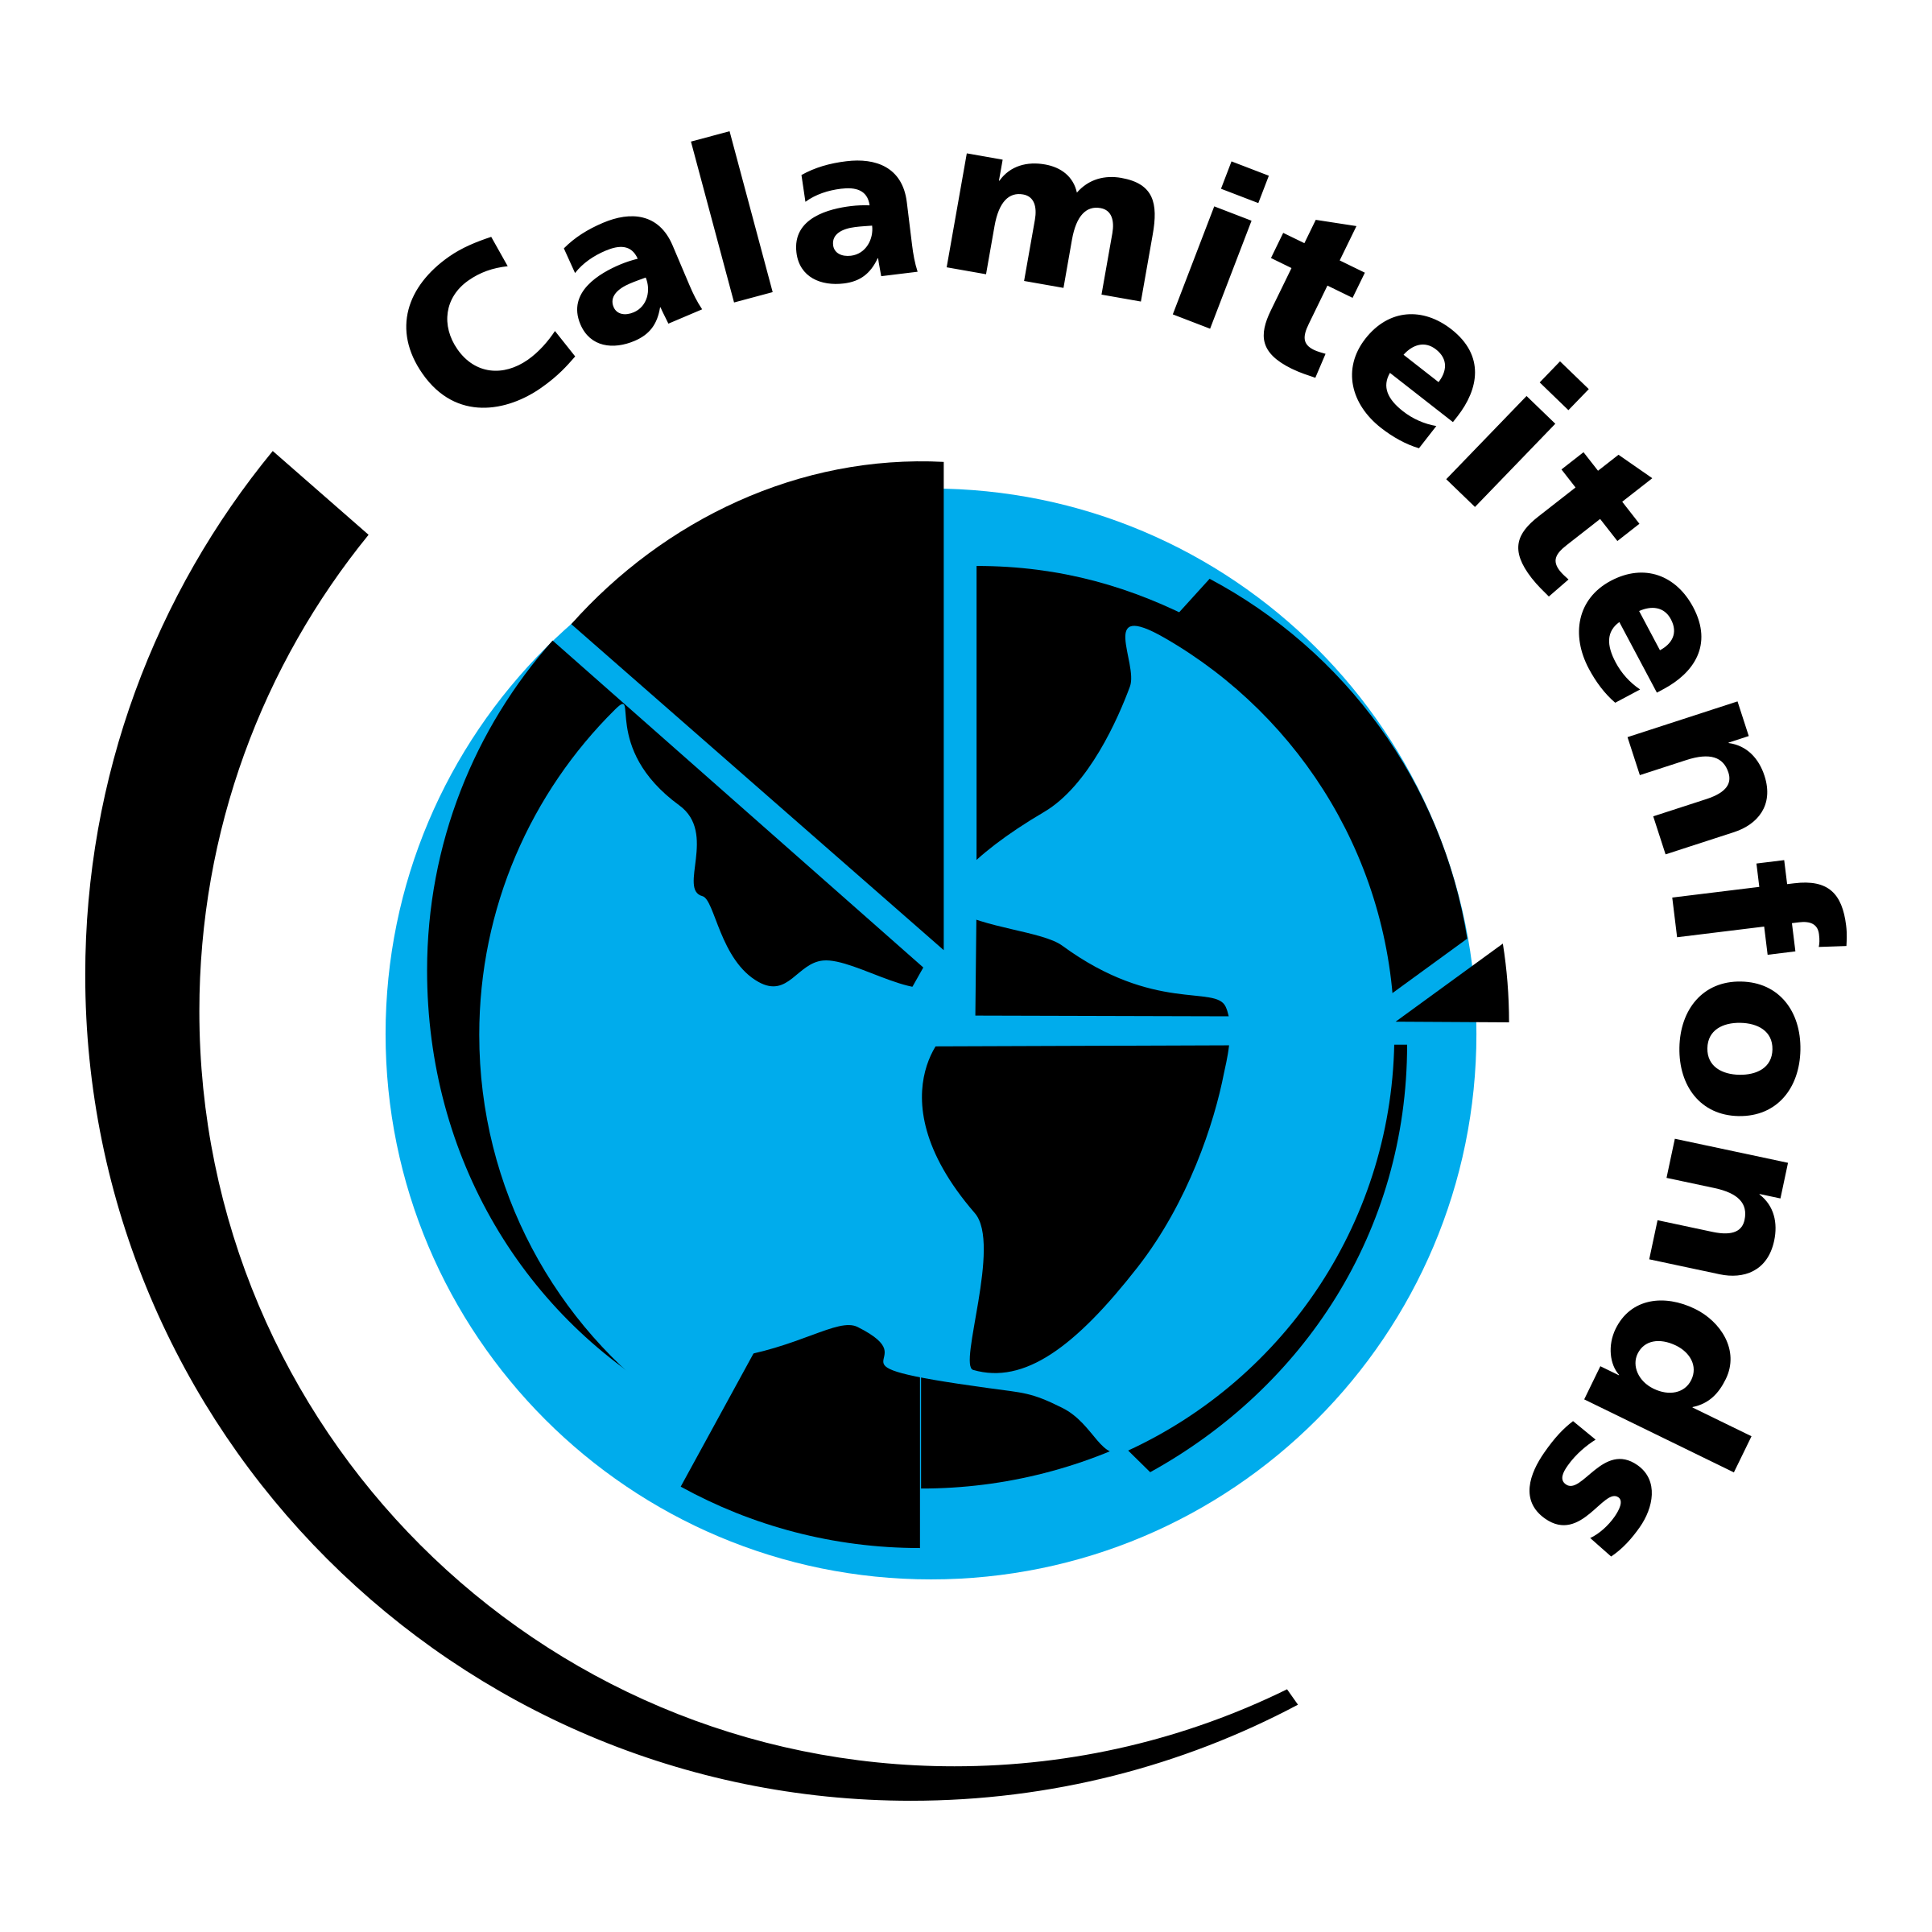 calamiteitenfonds-logo-png-transparent.png